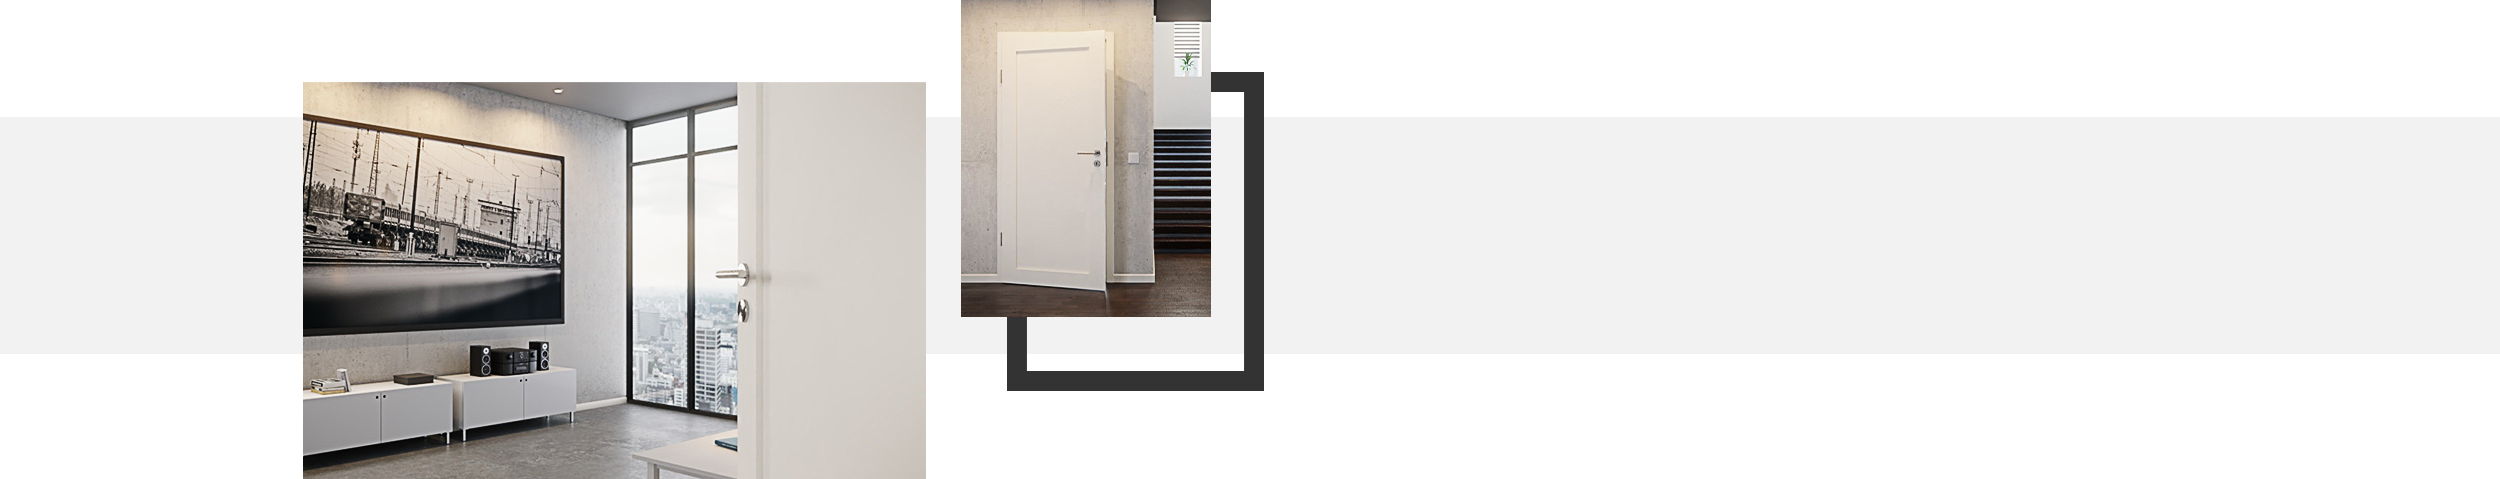 Moderne Stiltüren der Modell-Linie Weißlack Typ 25 online kaufen